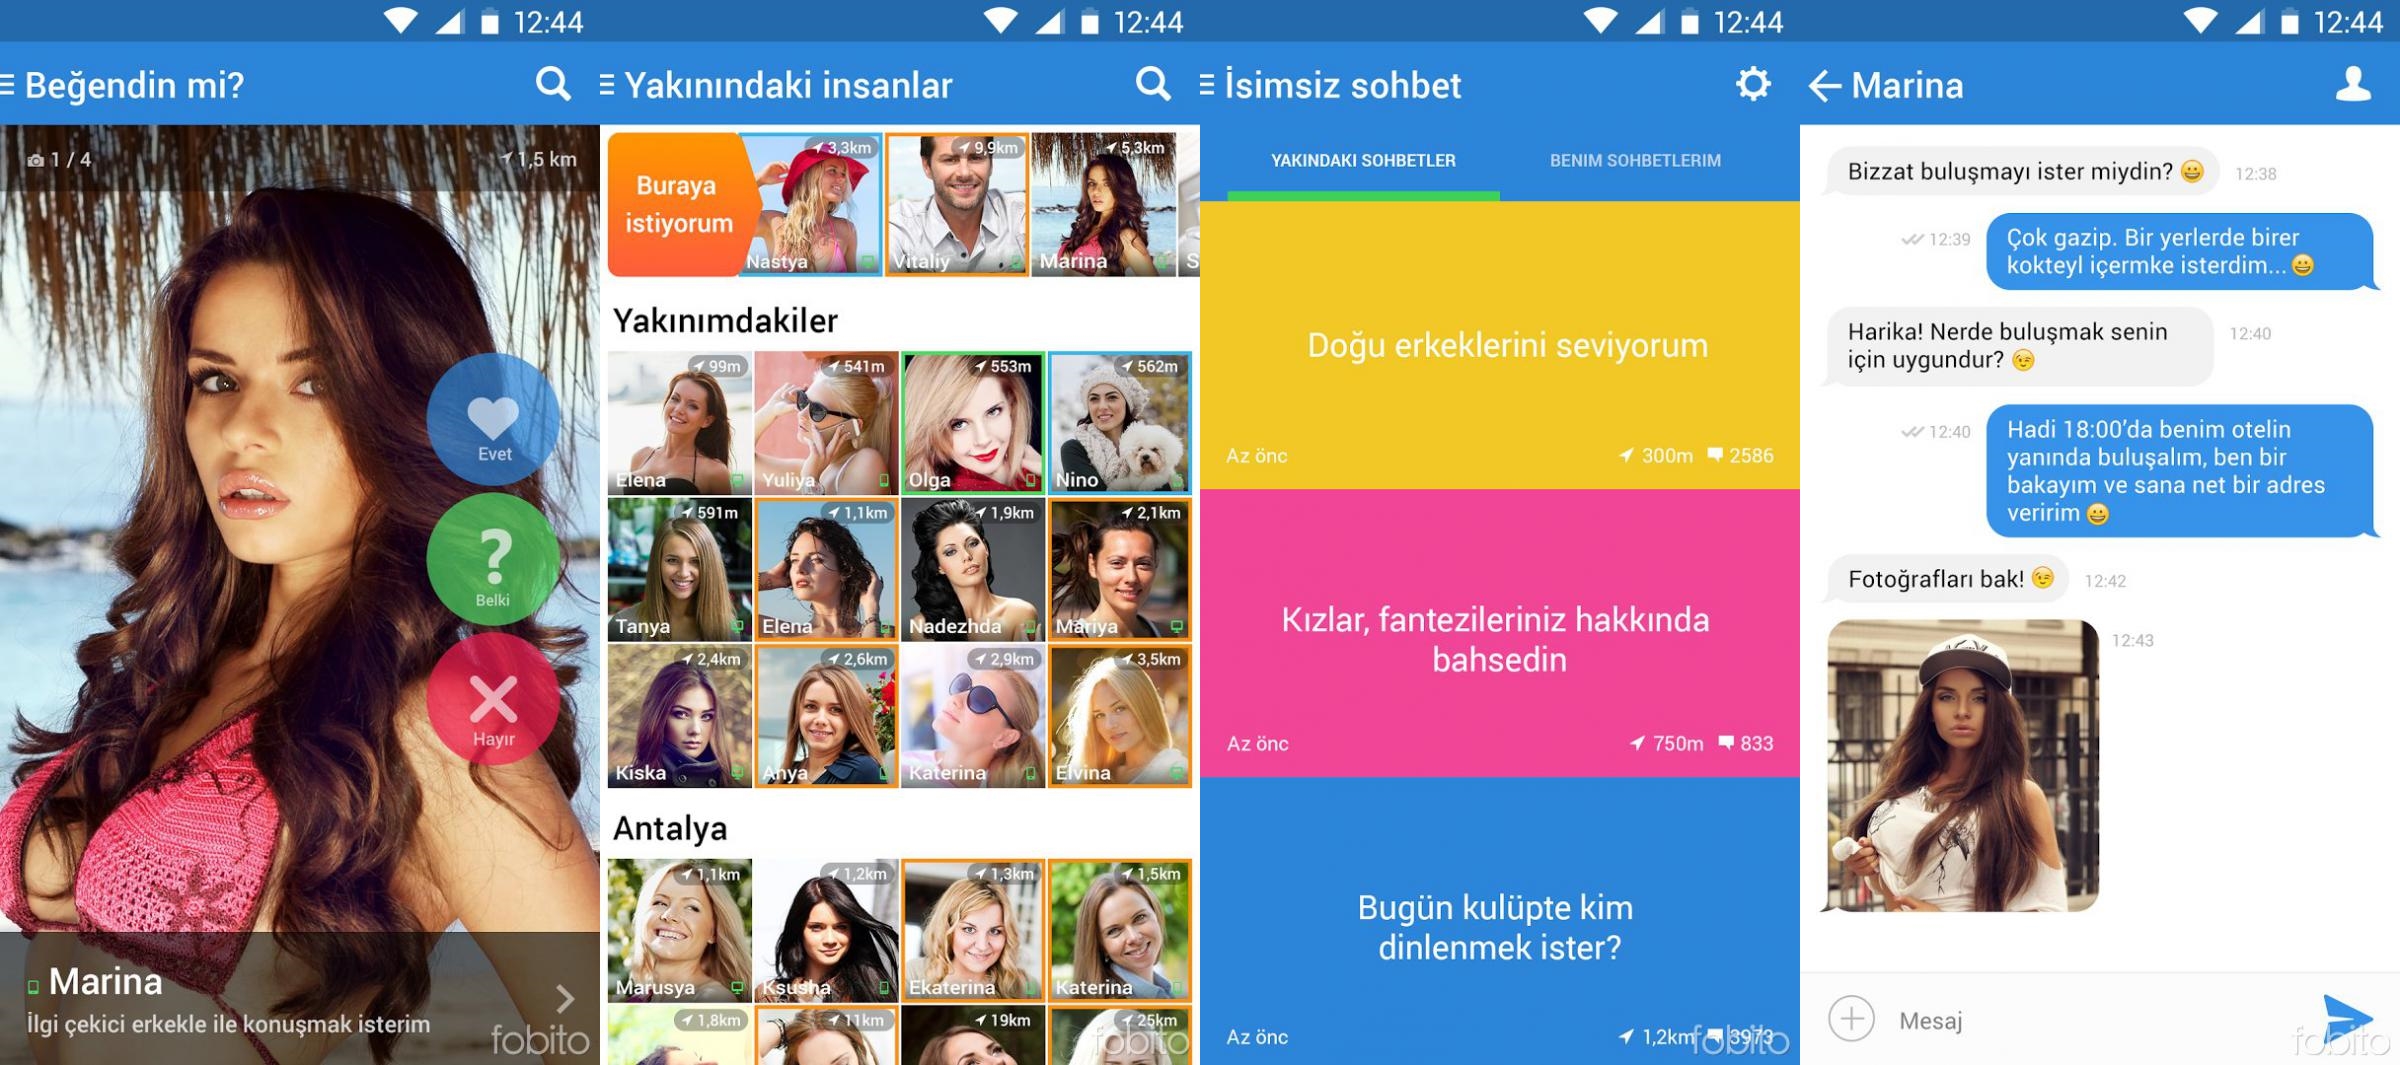 Türkçe en iyi ücretsiz arkadaşlık siteleri ve uygulamaları